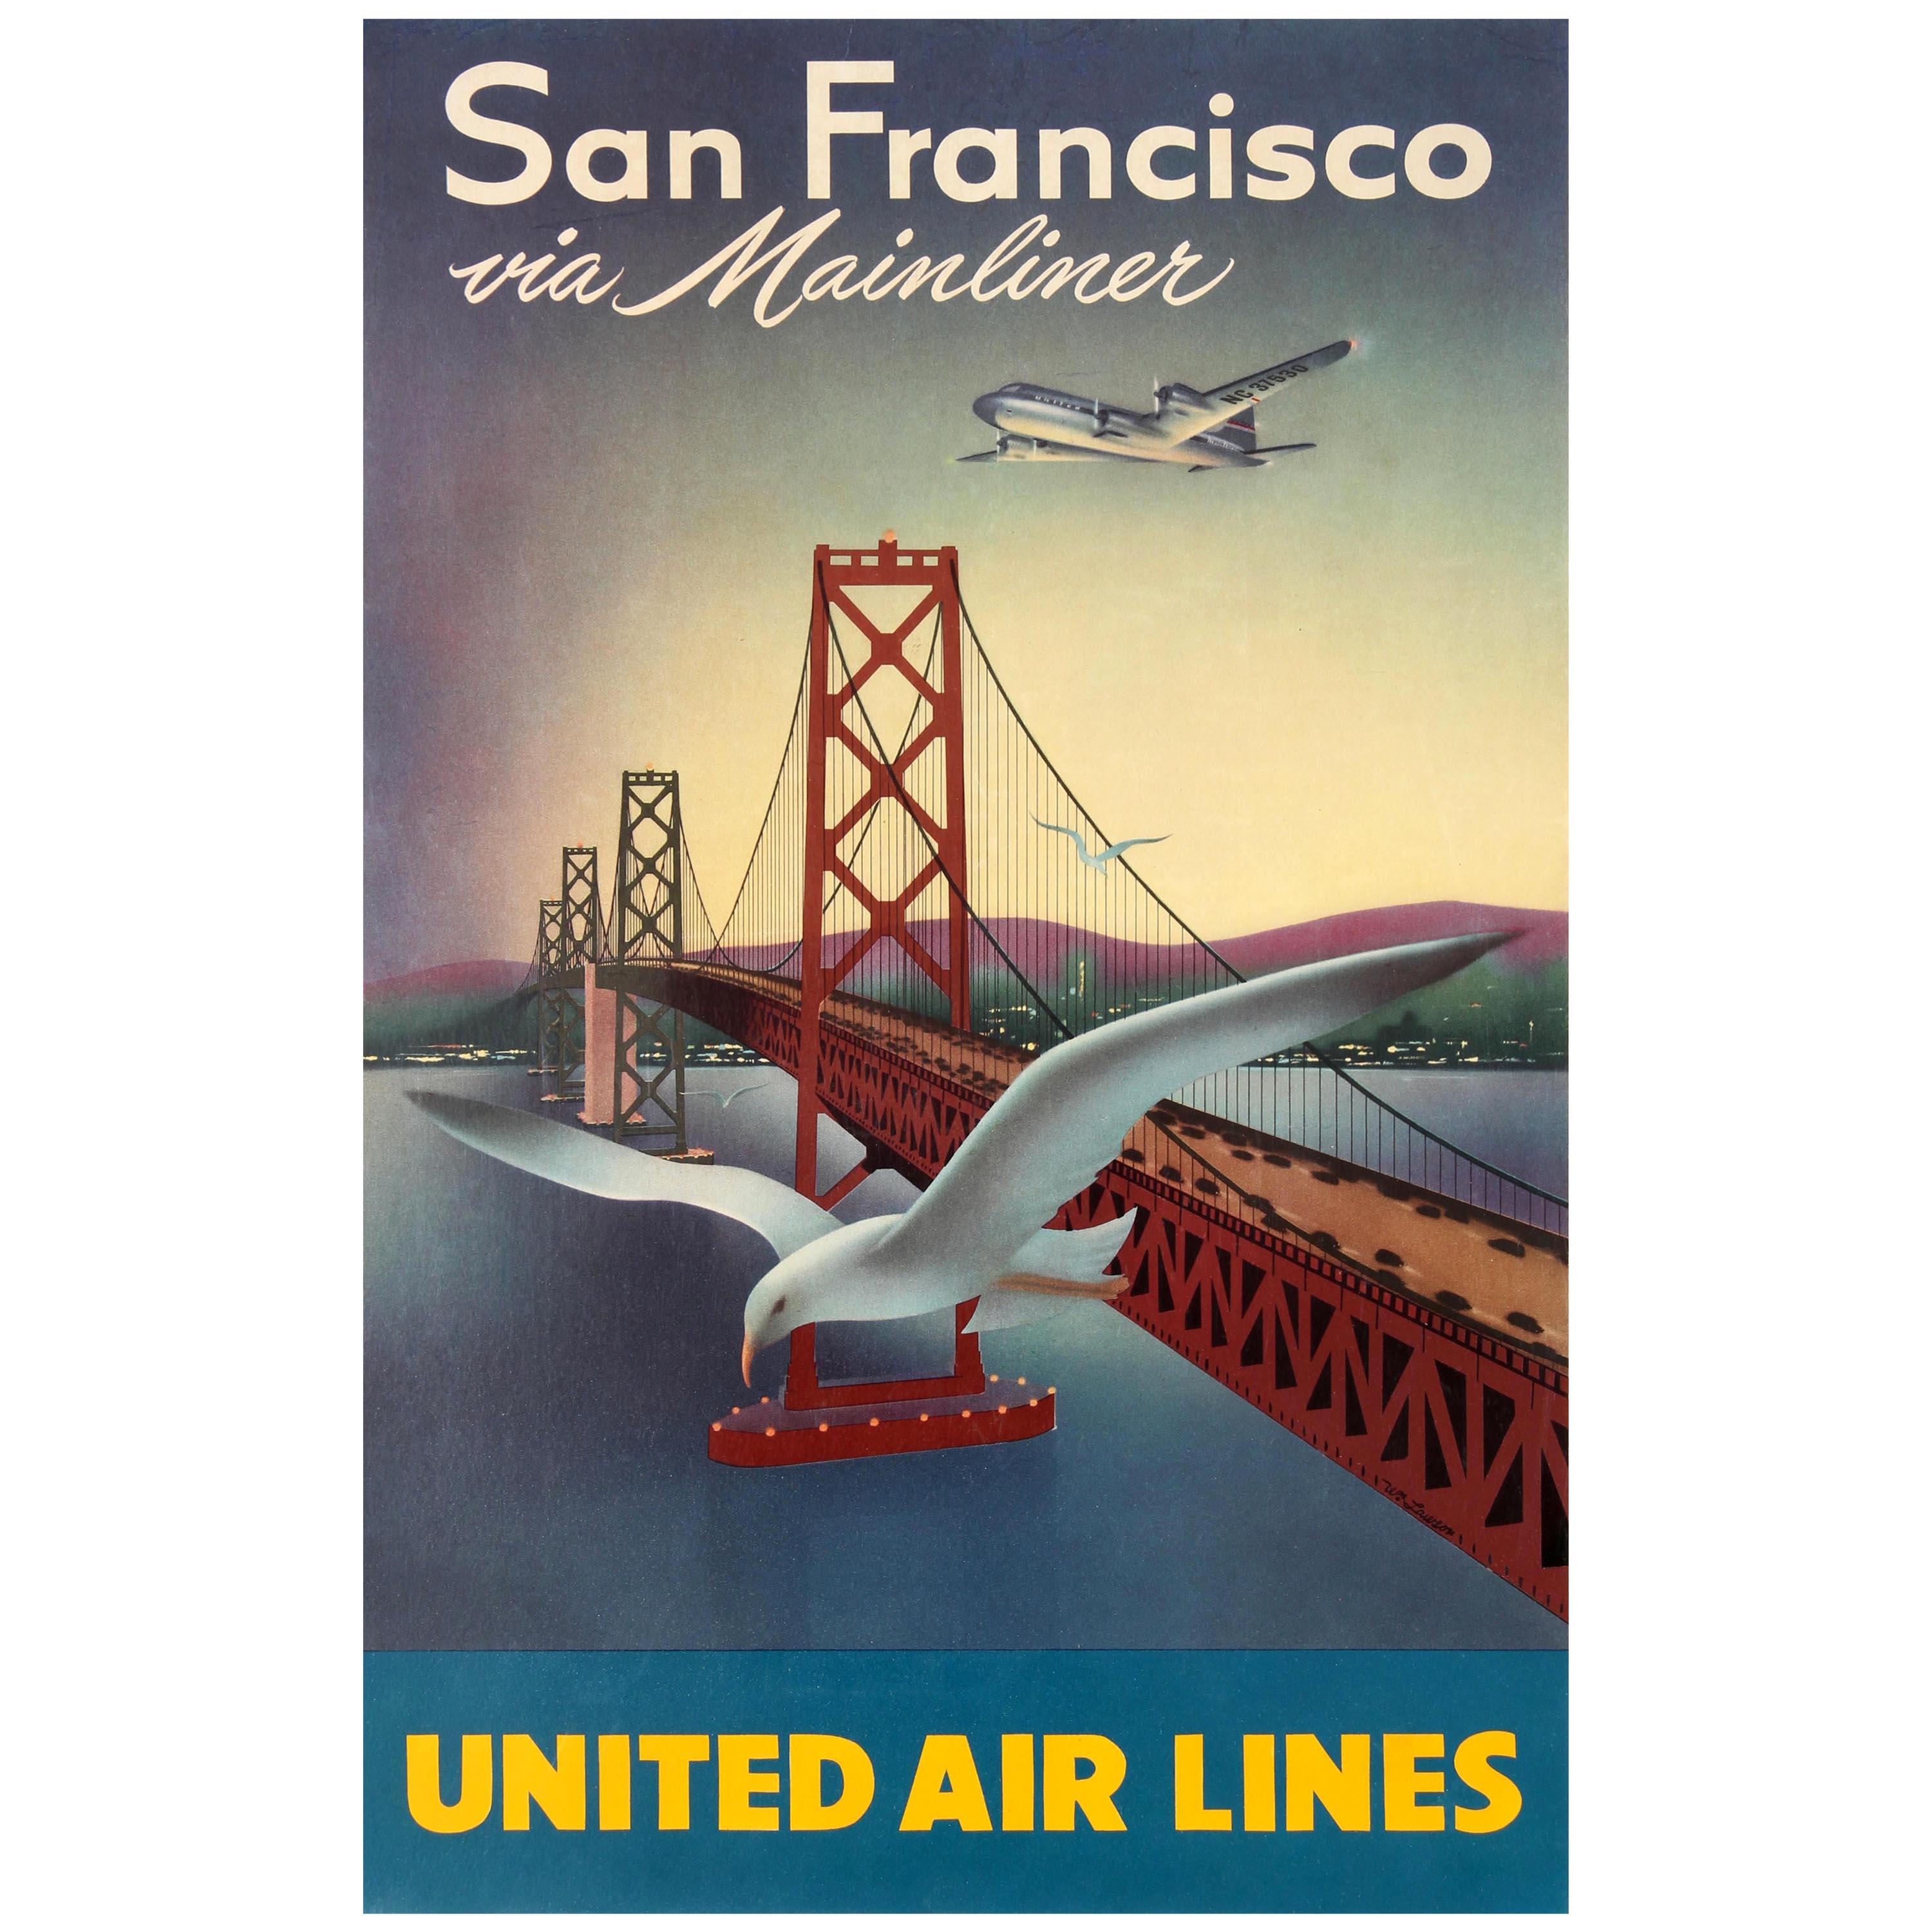 Original Vintage Travel Poster for San Francisco Via Mainliner United Air Lines